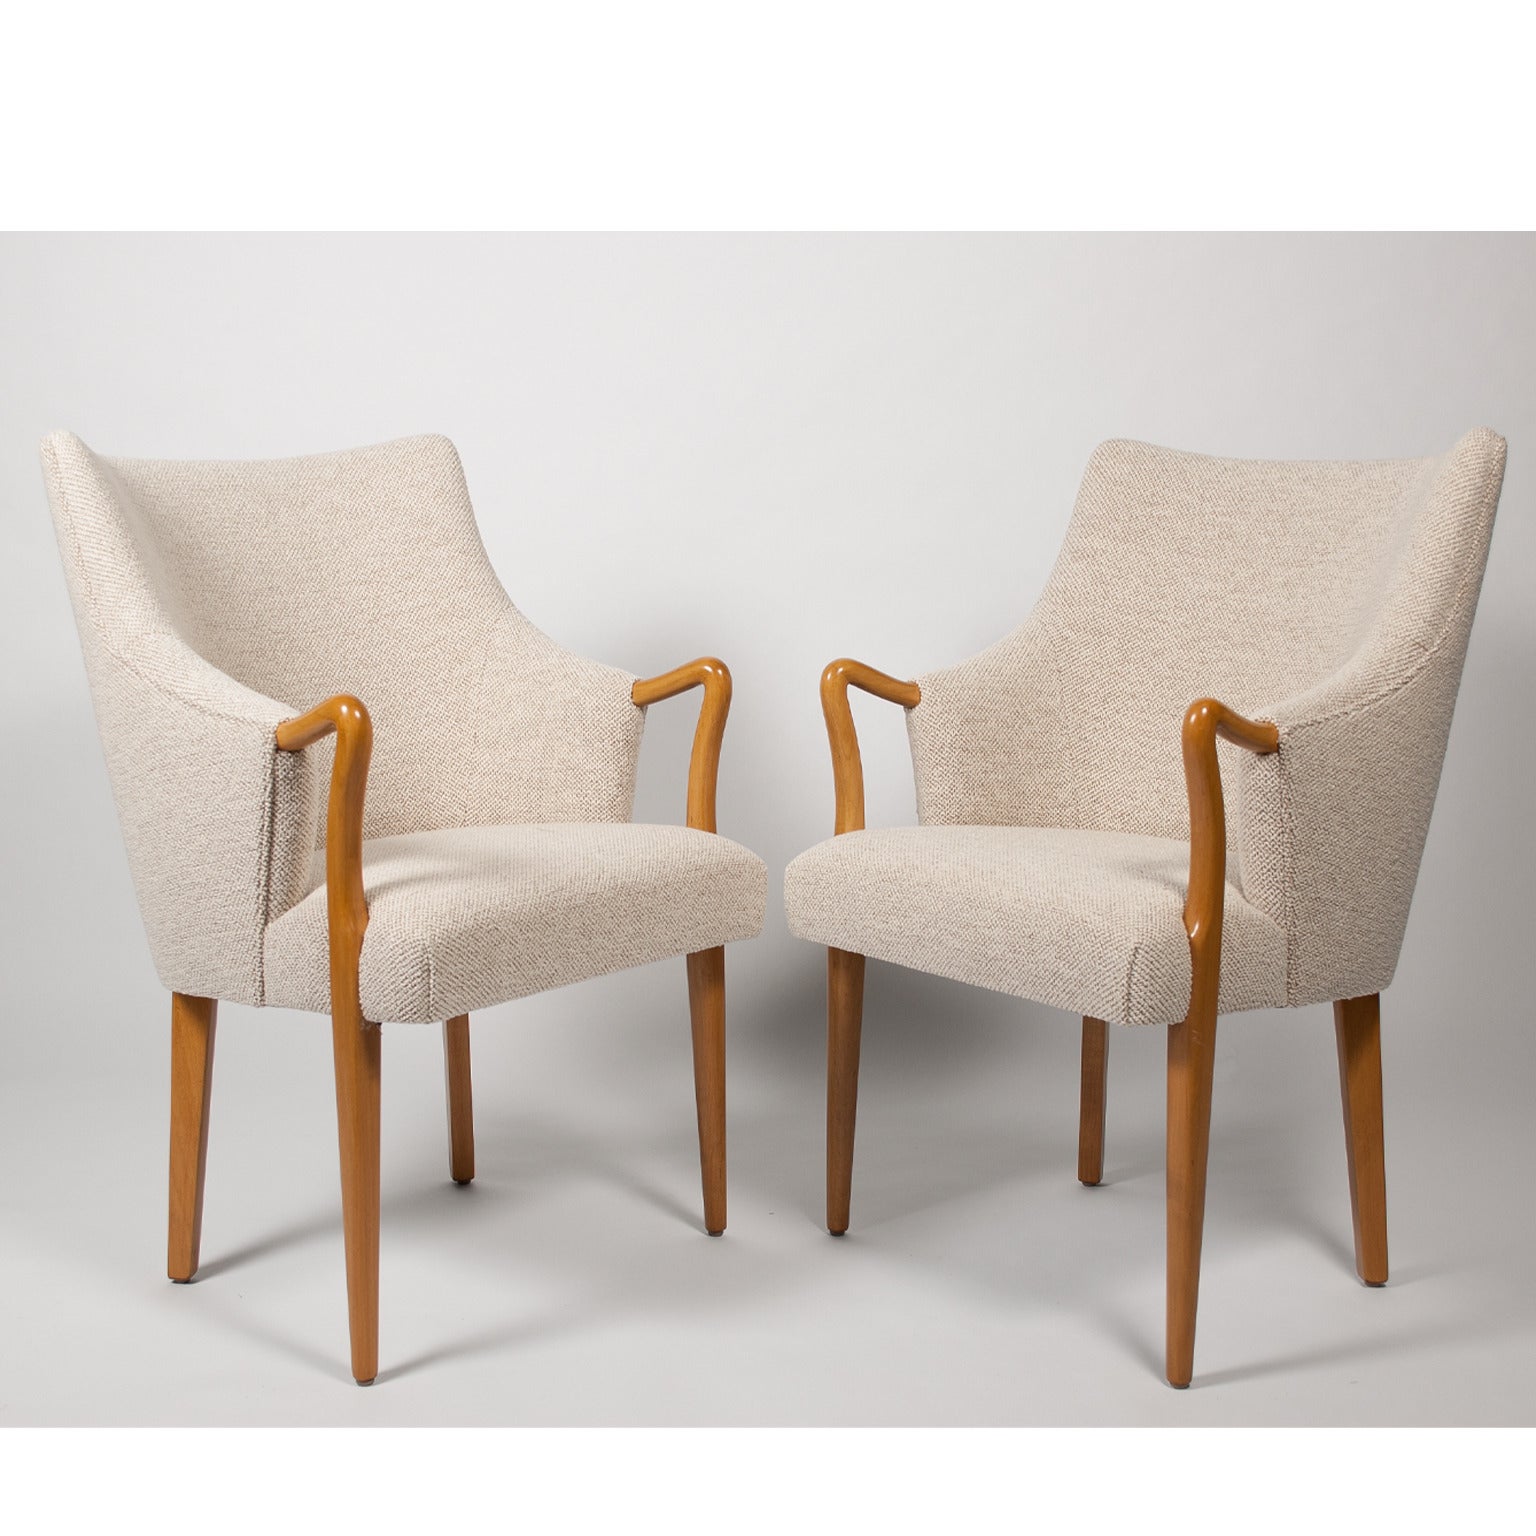 Pair of Custom Swedish Chairs